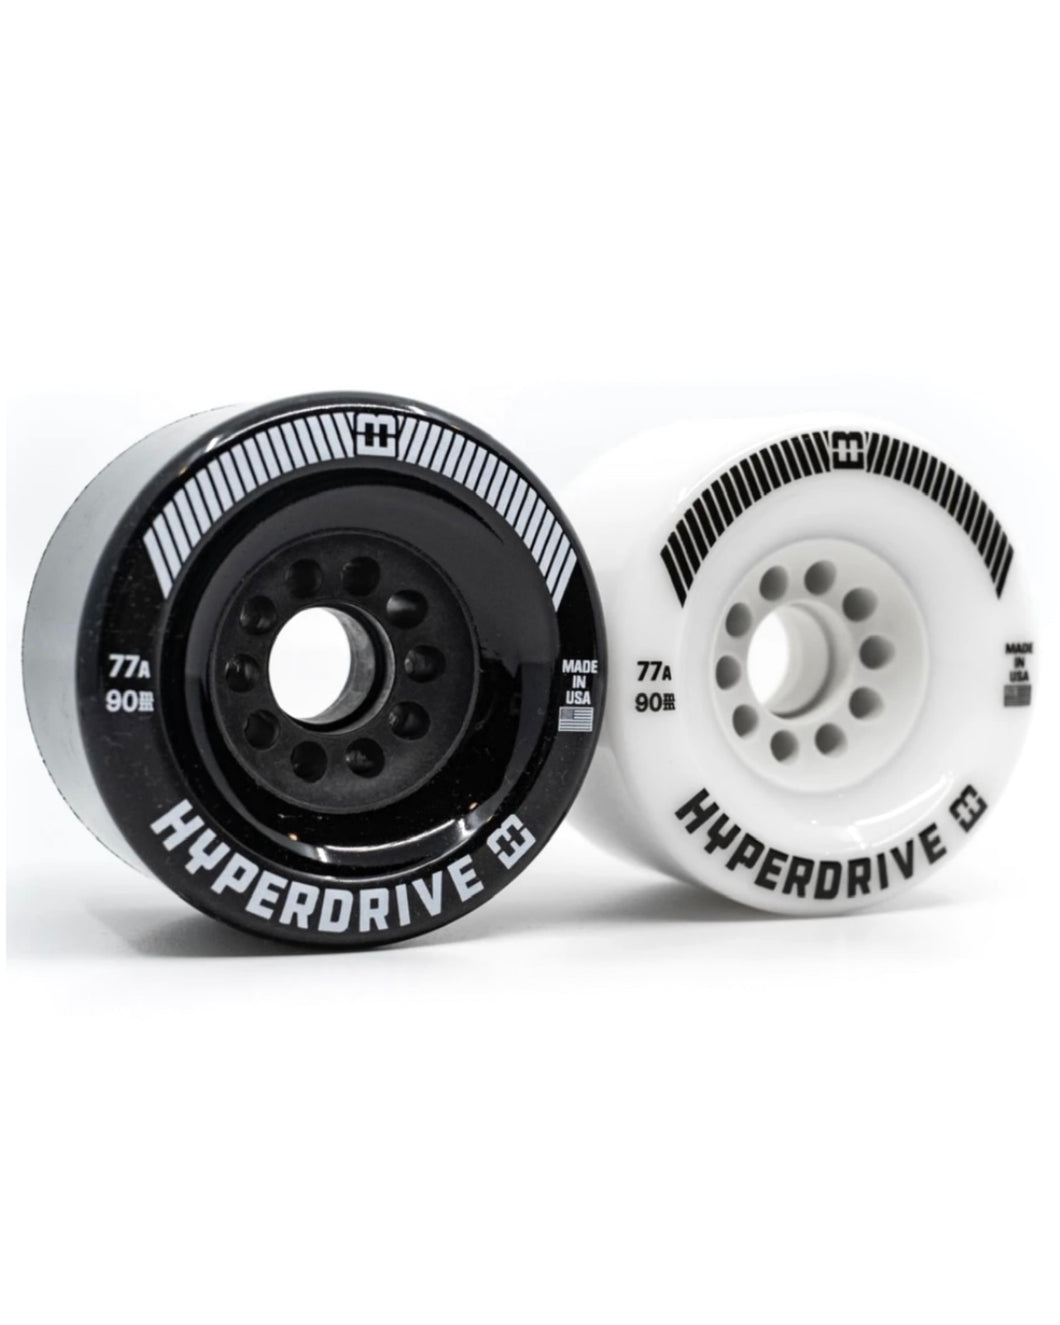 Ownboard HyperDrive 90mm Electric Skateboard Wheels